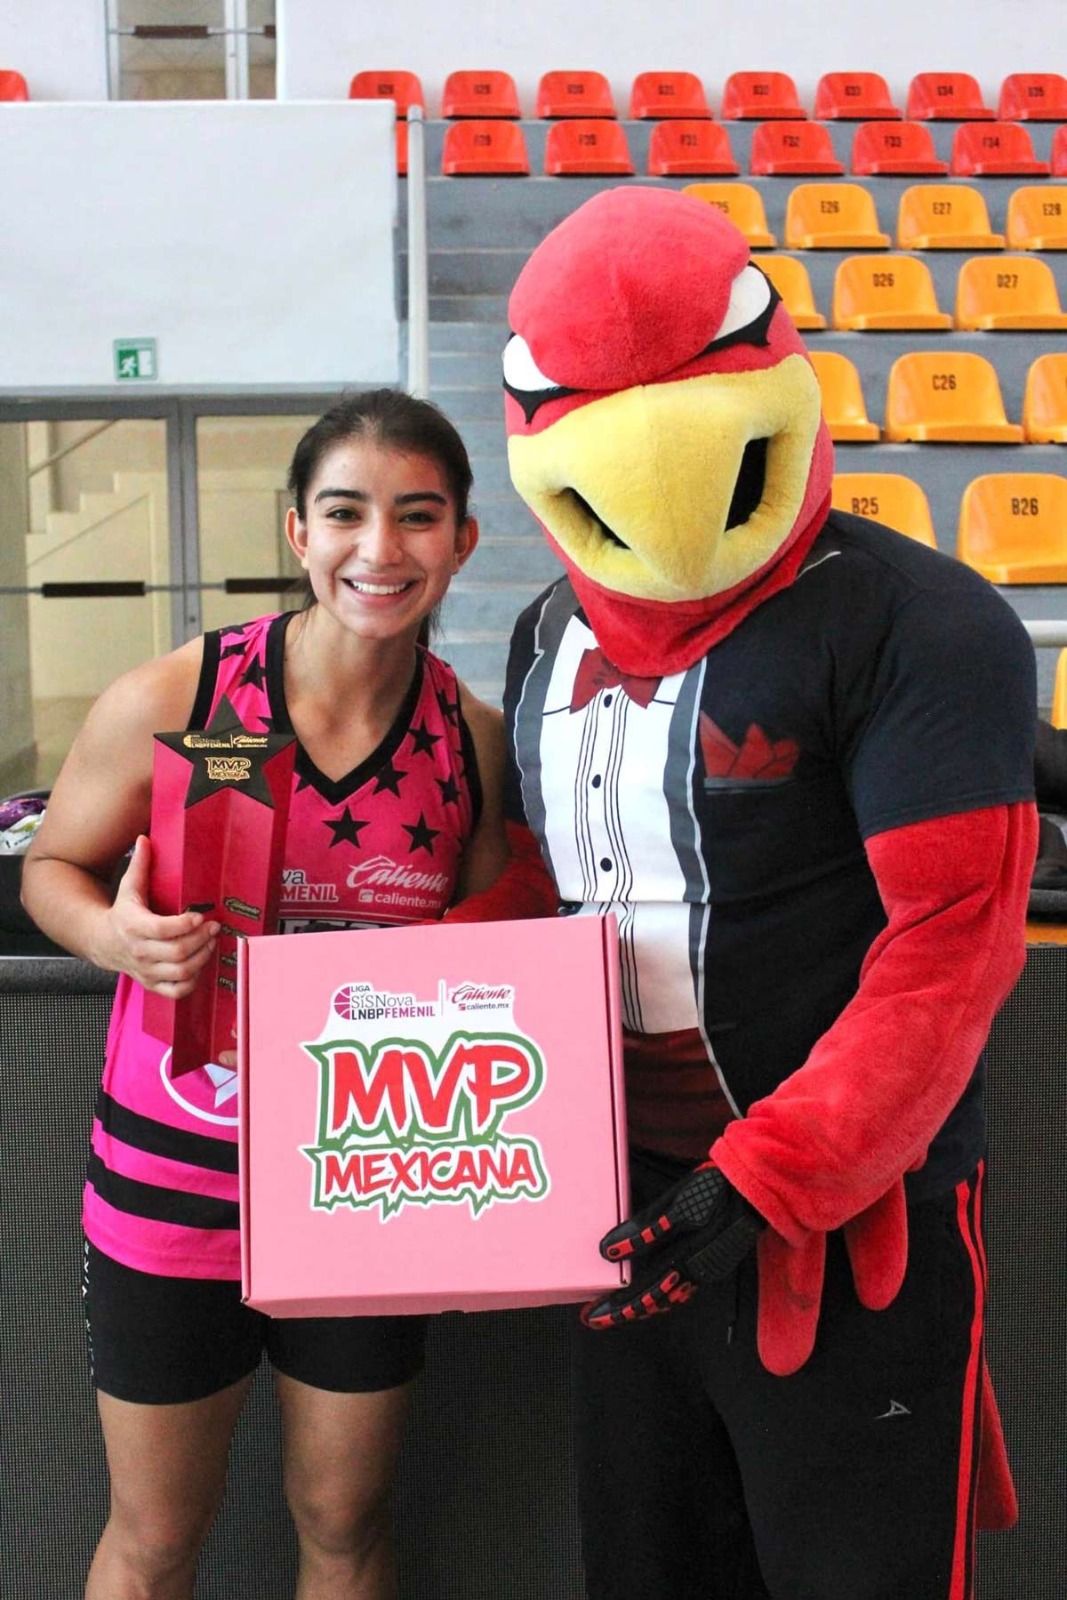 Jugadora de las Rojas gana el MVP Mexicana